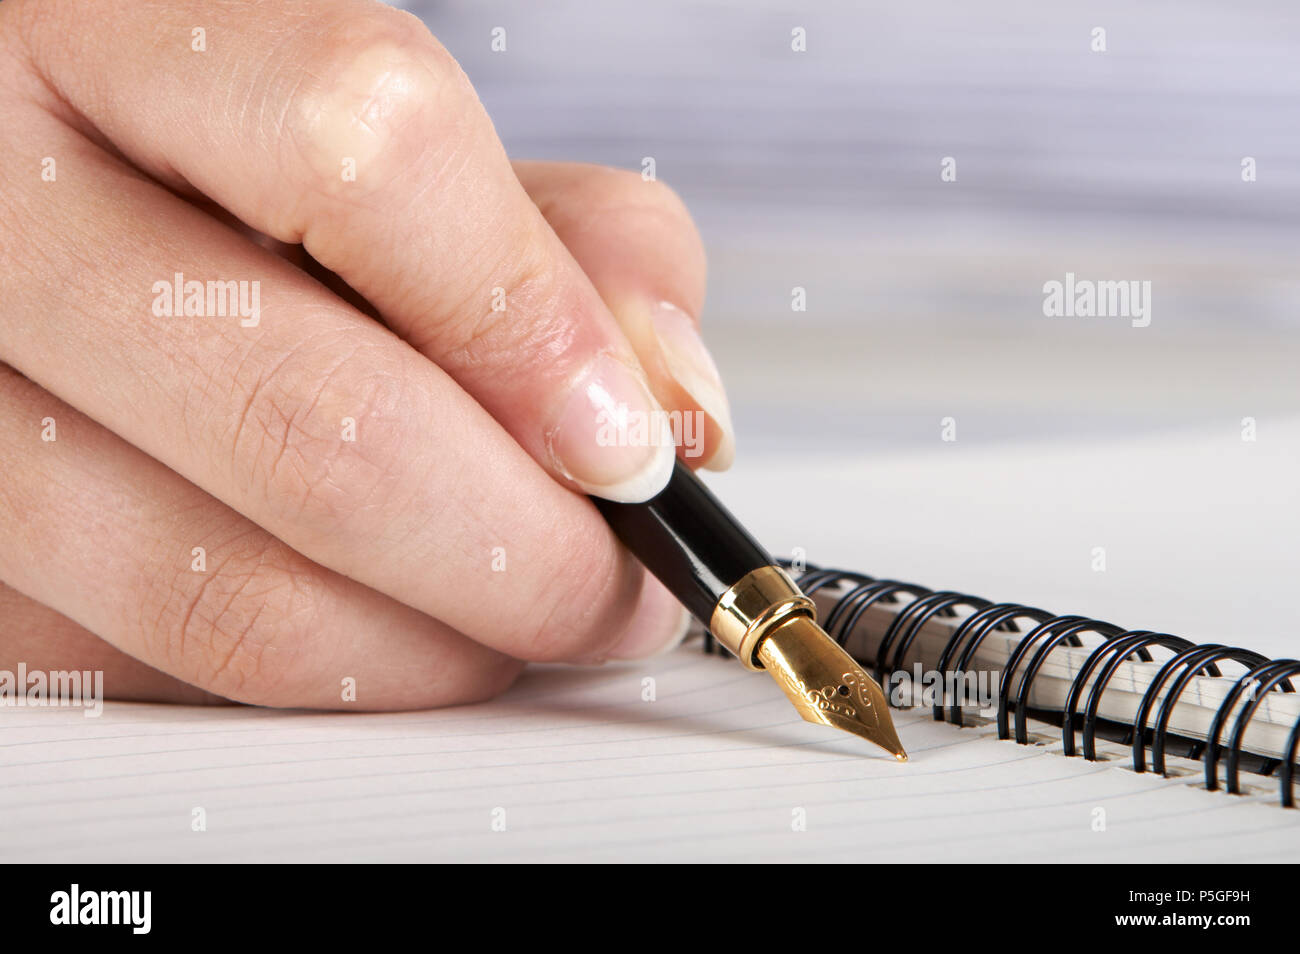 La main bien entretenu l'écriture avec un stylo d'or Banque D'Images